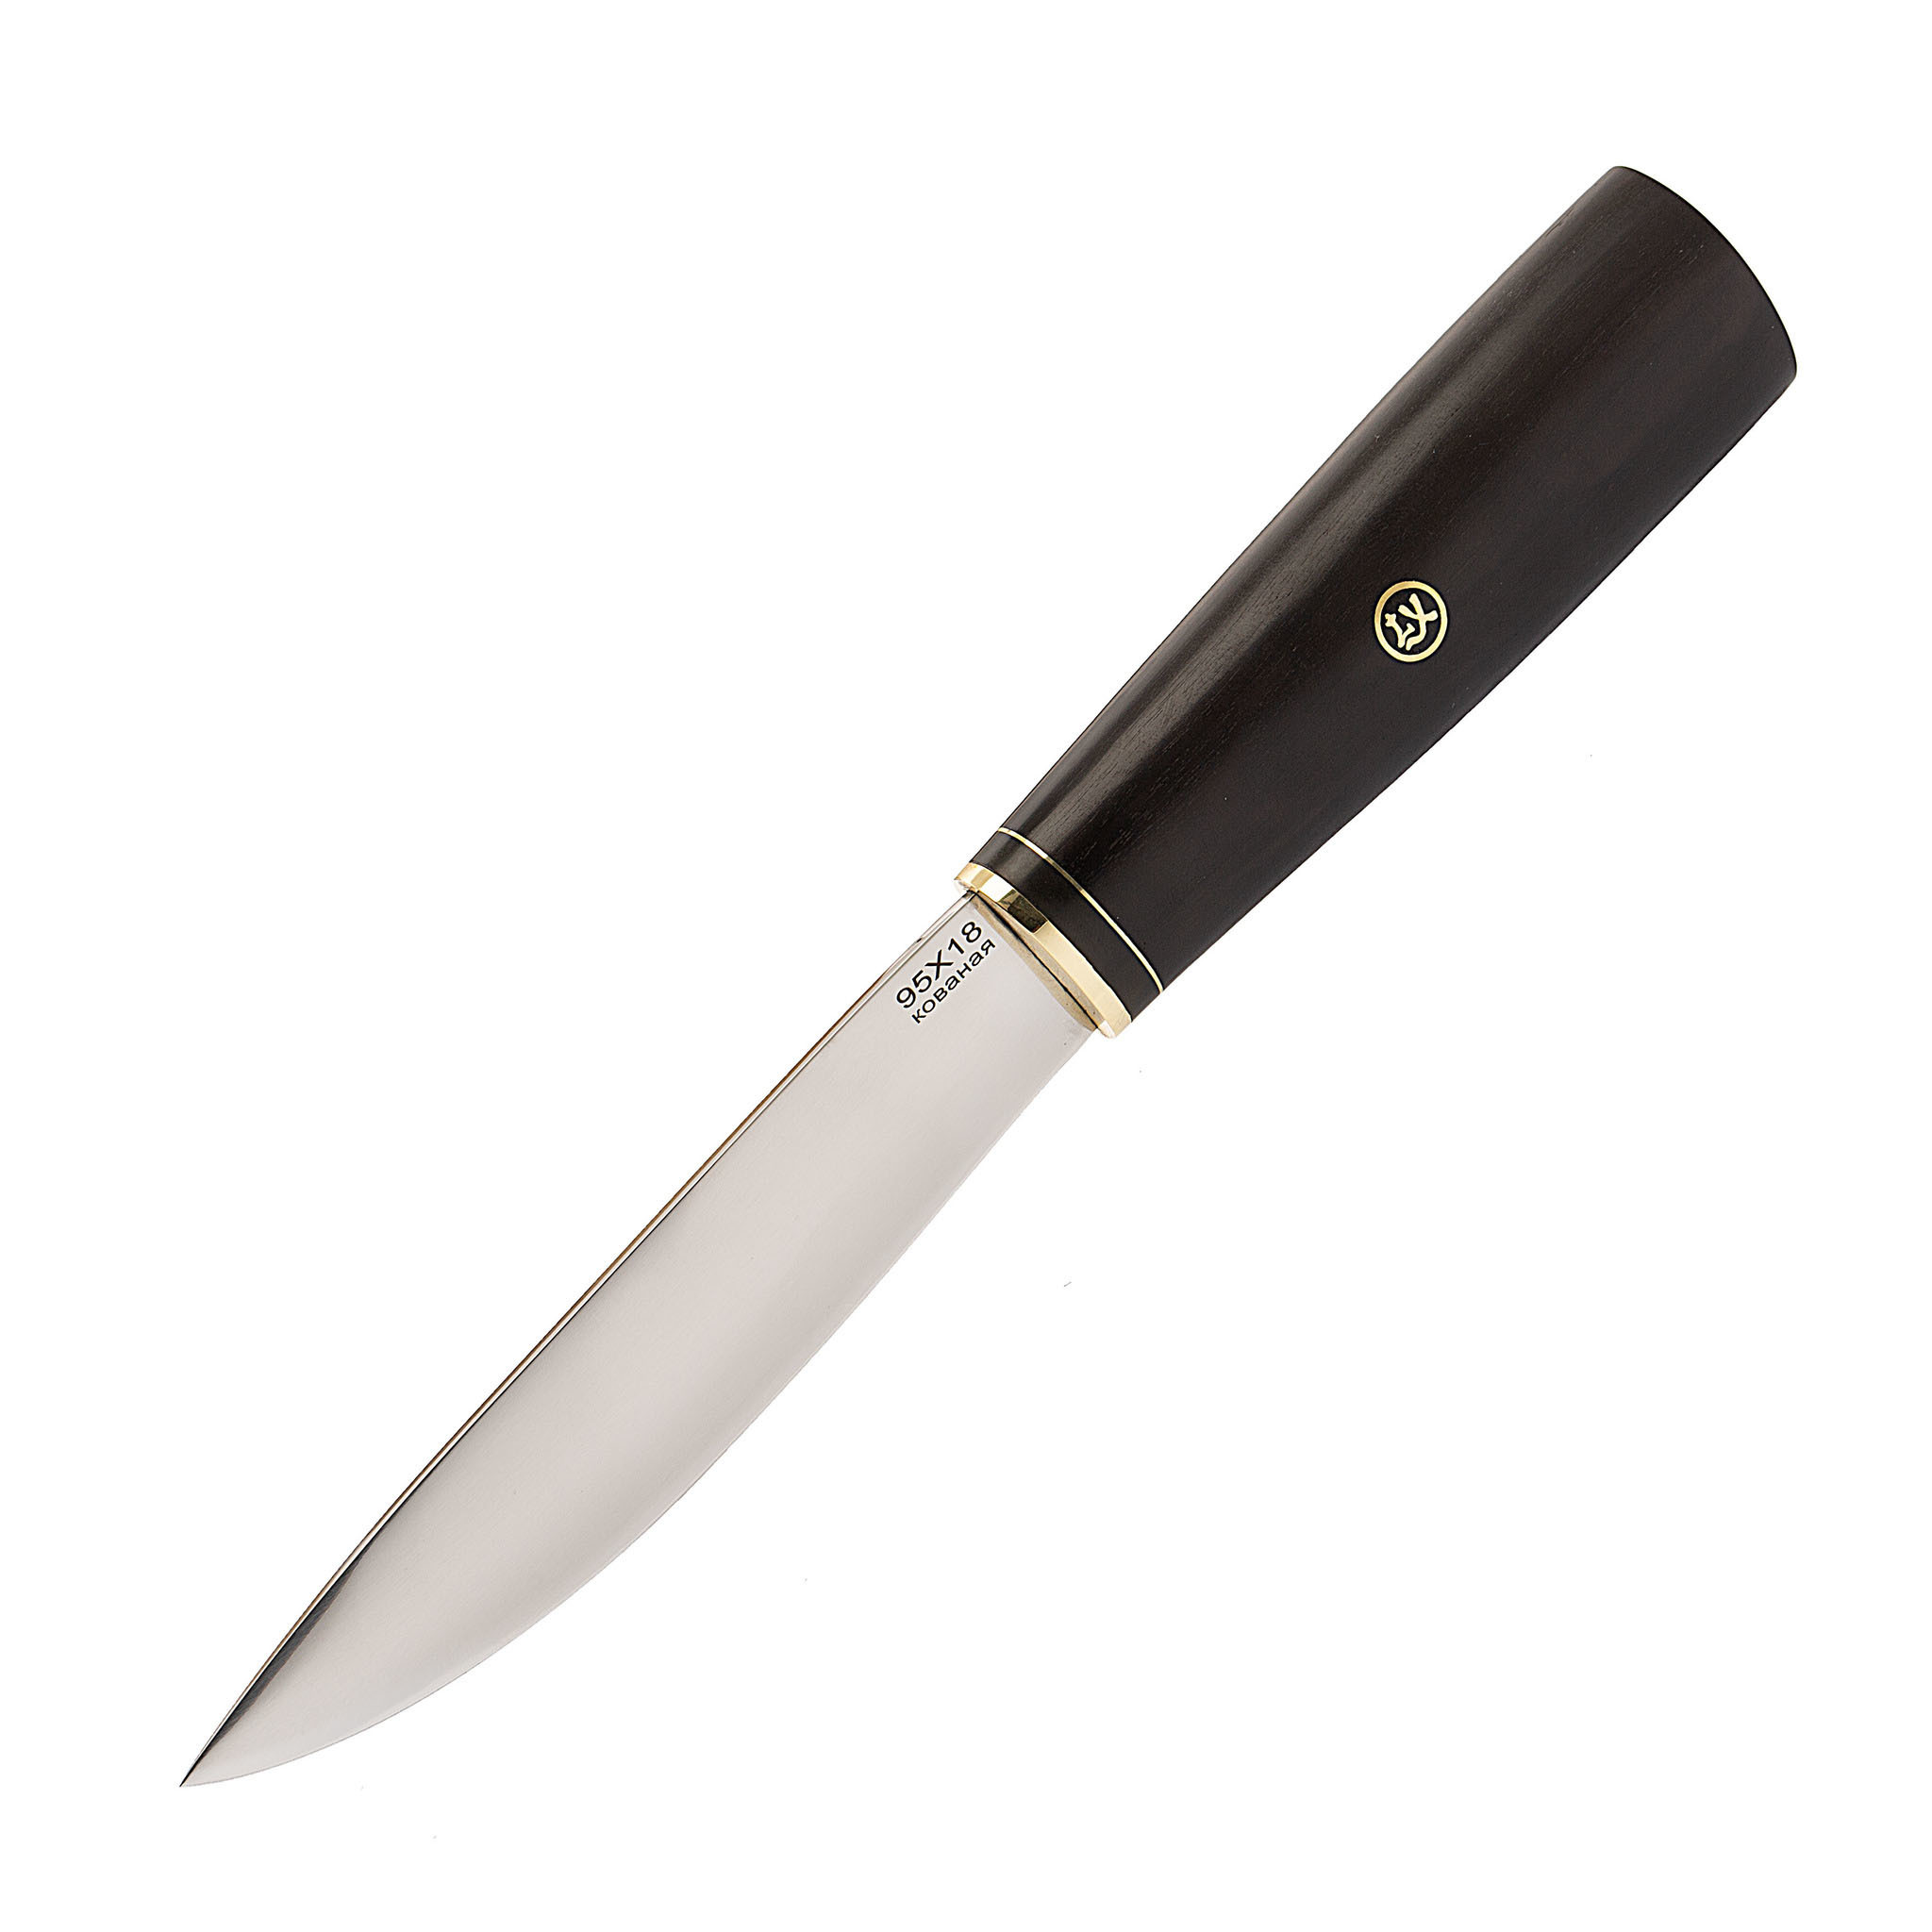 Нож Якутский, сталь 95х18, граб нож разделочный аир горностай сталь 95х18 рукоять граб